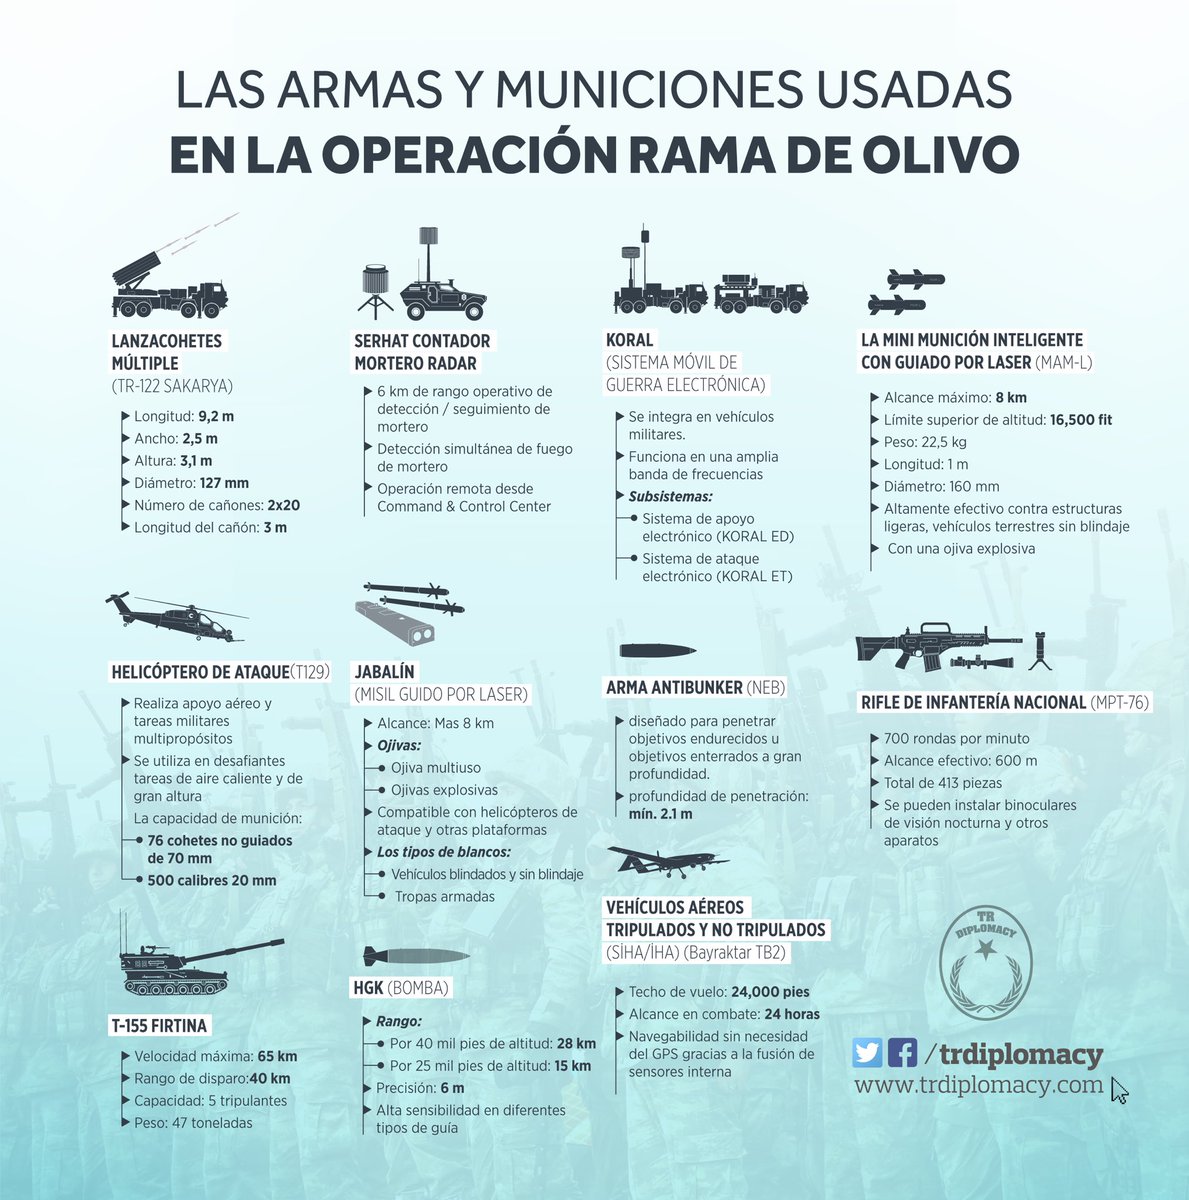 Algunas de las armas producidas en Turquía y usadas en La Operación Rama De Olivo